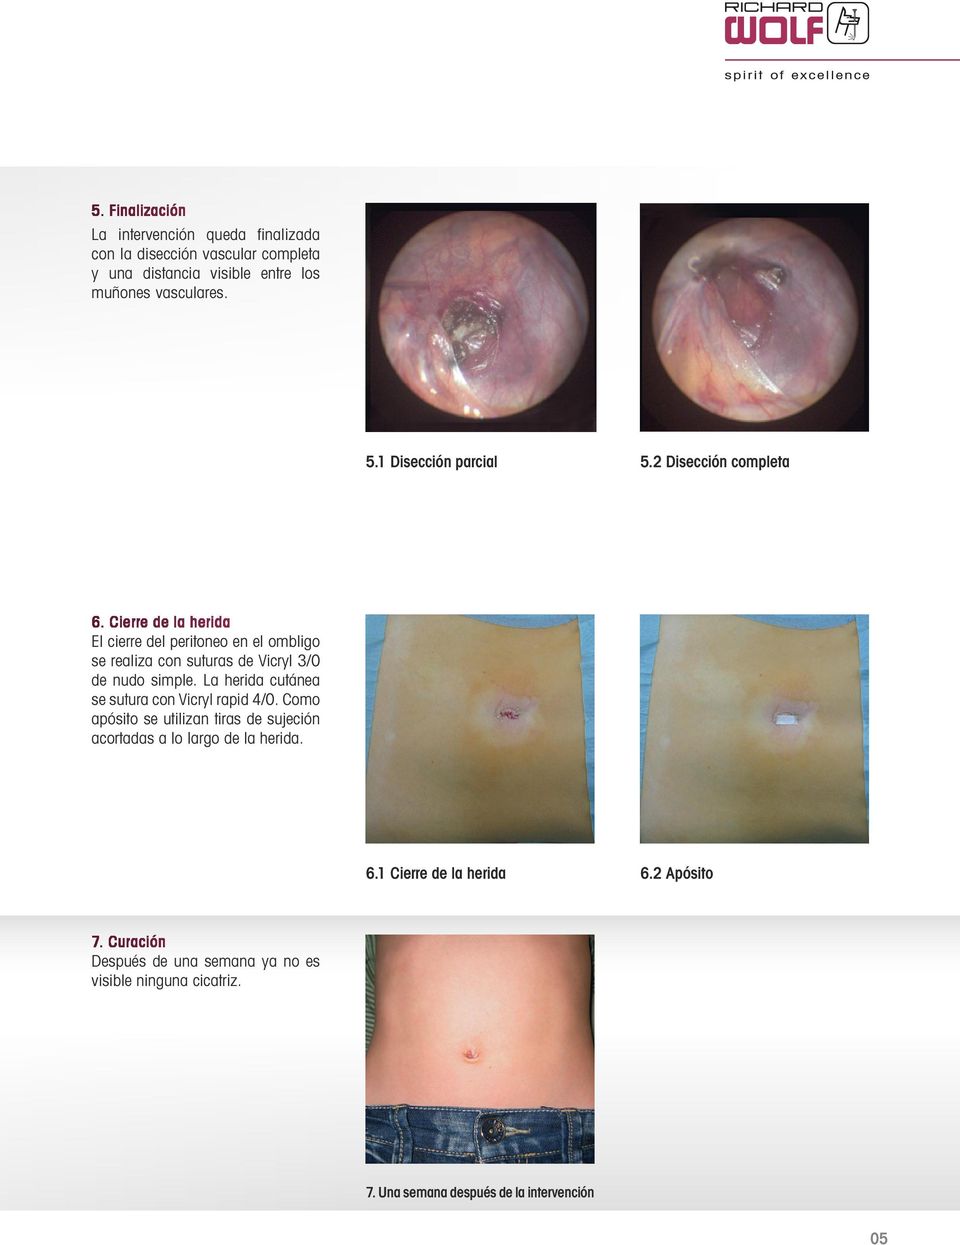 Cierre de la herida El cierre del peritoneo en el ombligo se realiza con suturas de Vicryl 3/0 de nudo simple.